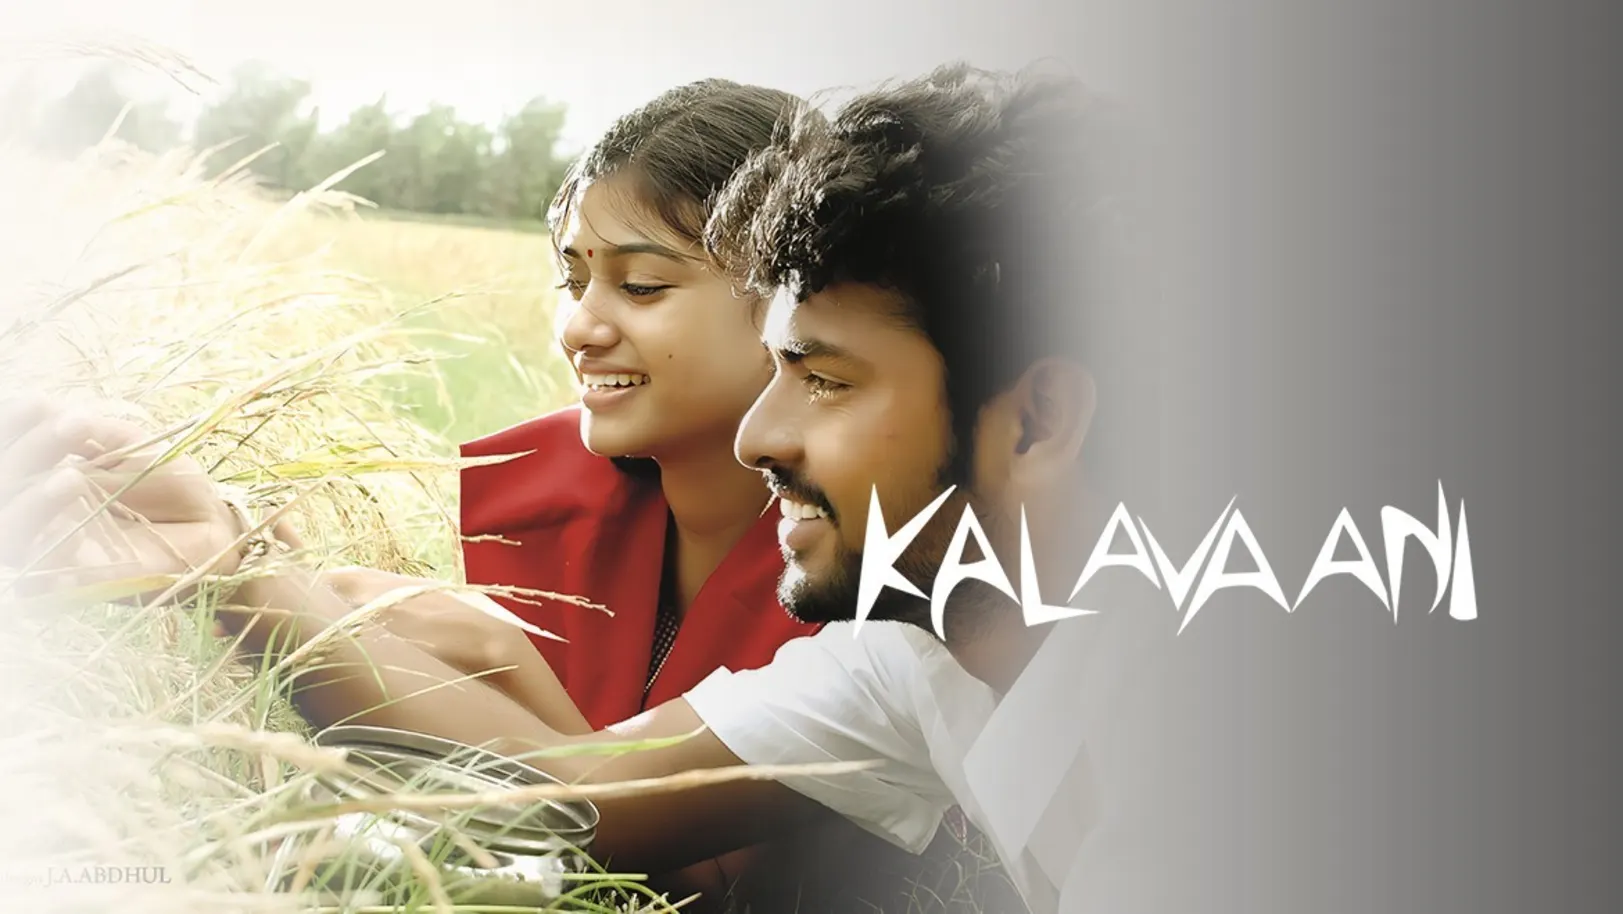 Kalavaani Movie